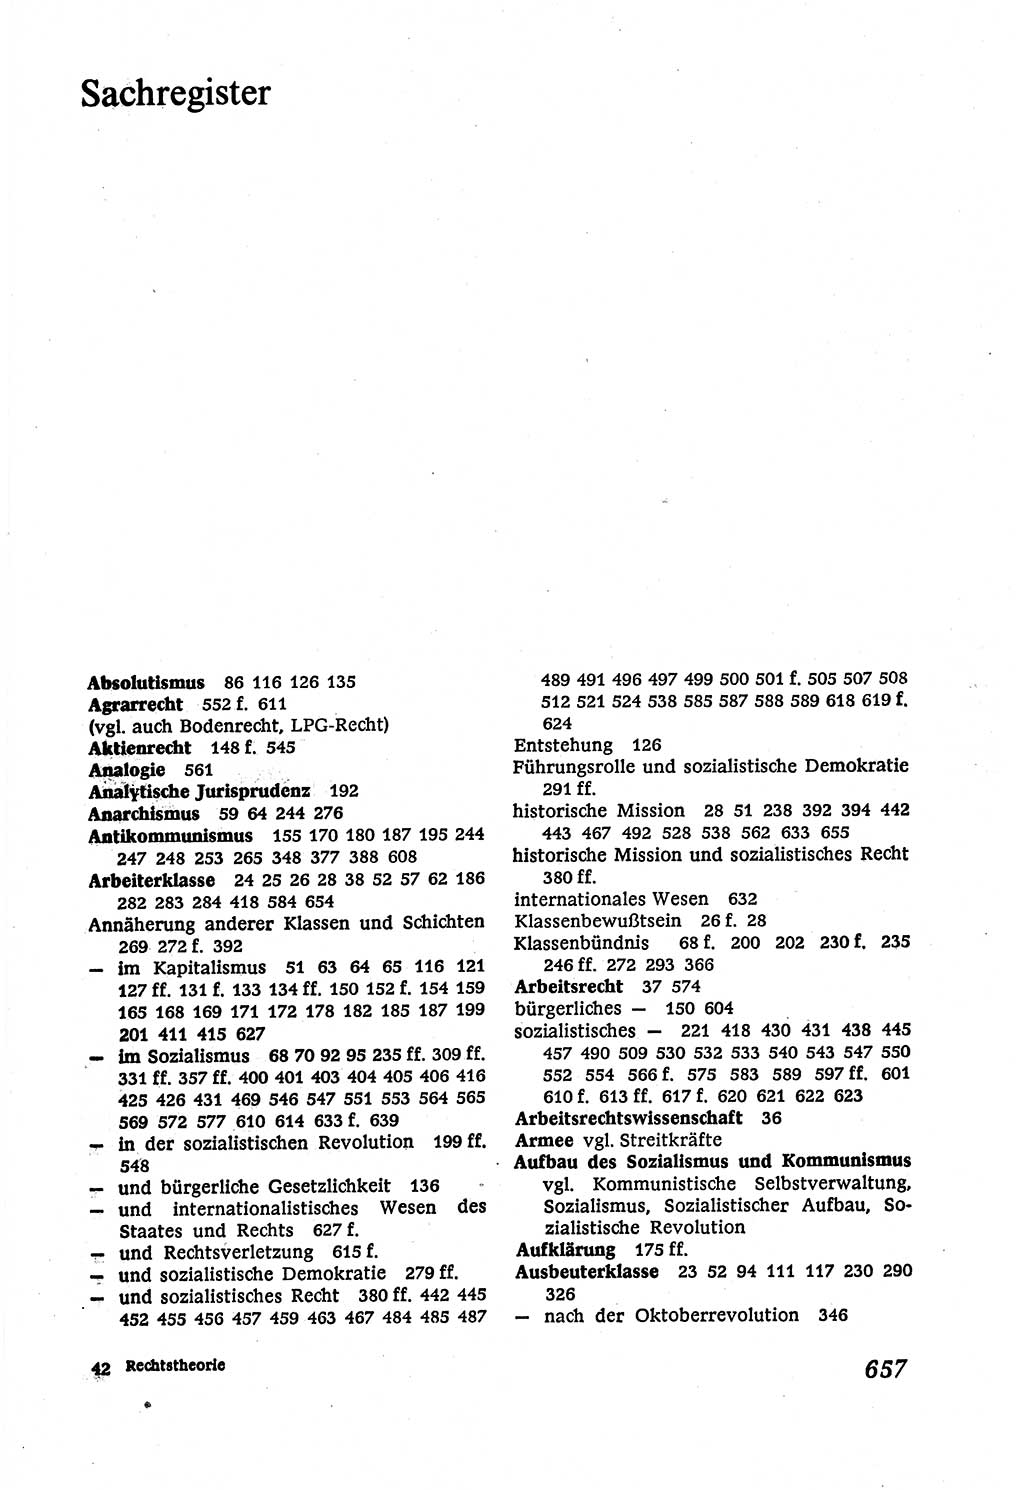 Marxistisch-leninistische (ML) Staats- und Rechtstheorie [Deutsche Demokratische Republik (DDR)], Lehrbuch 1980, Seite 657 (ML St.-R.-Th. DDR Lb. 1980, S. 657)